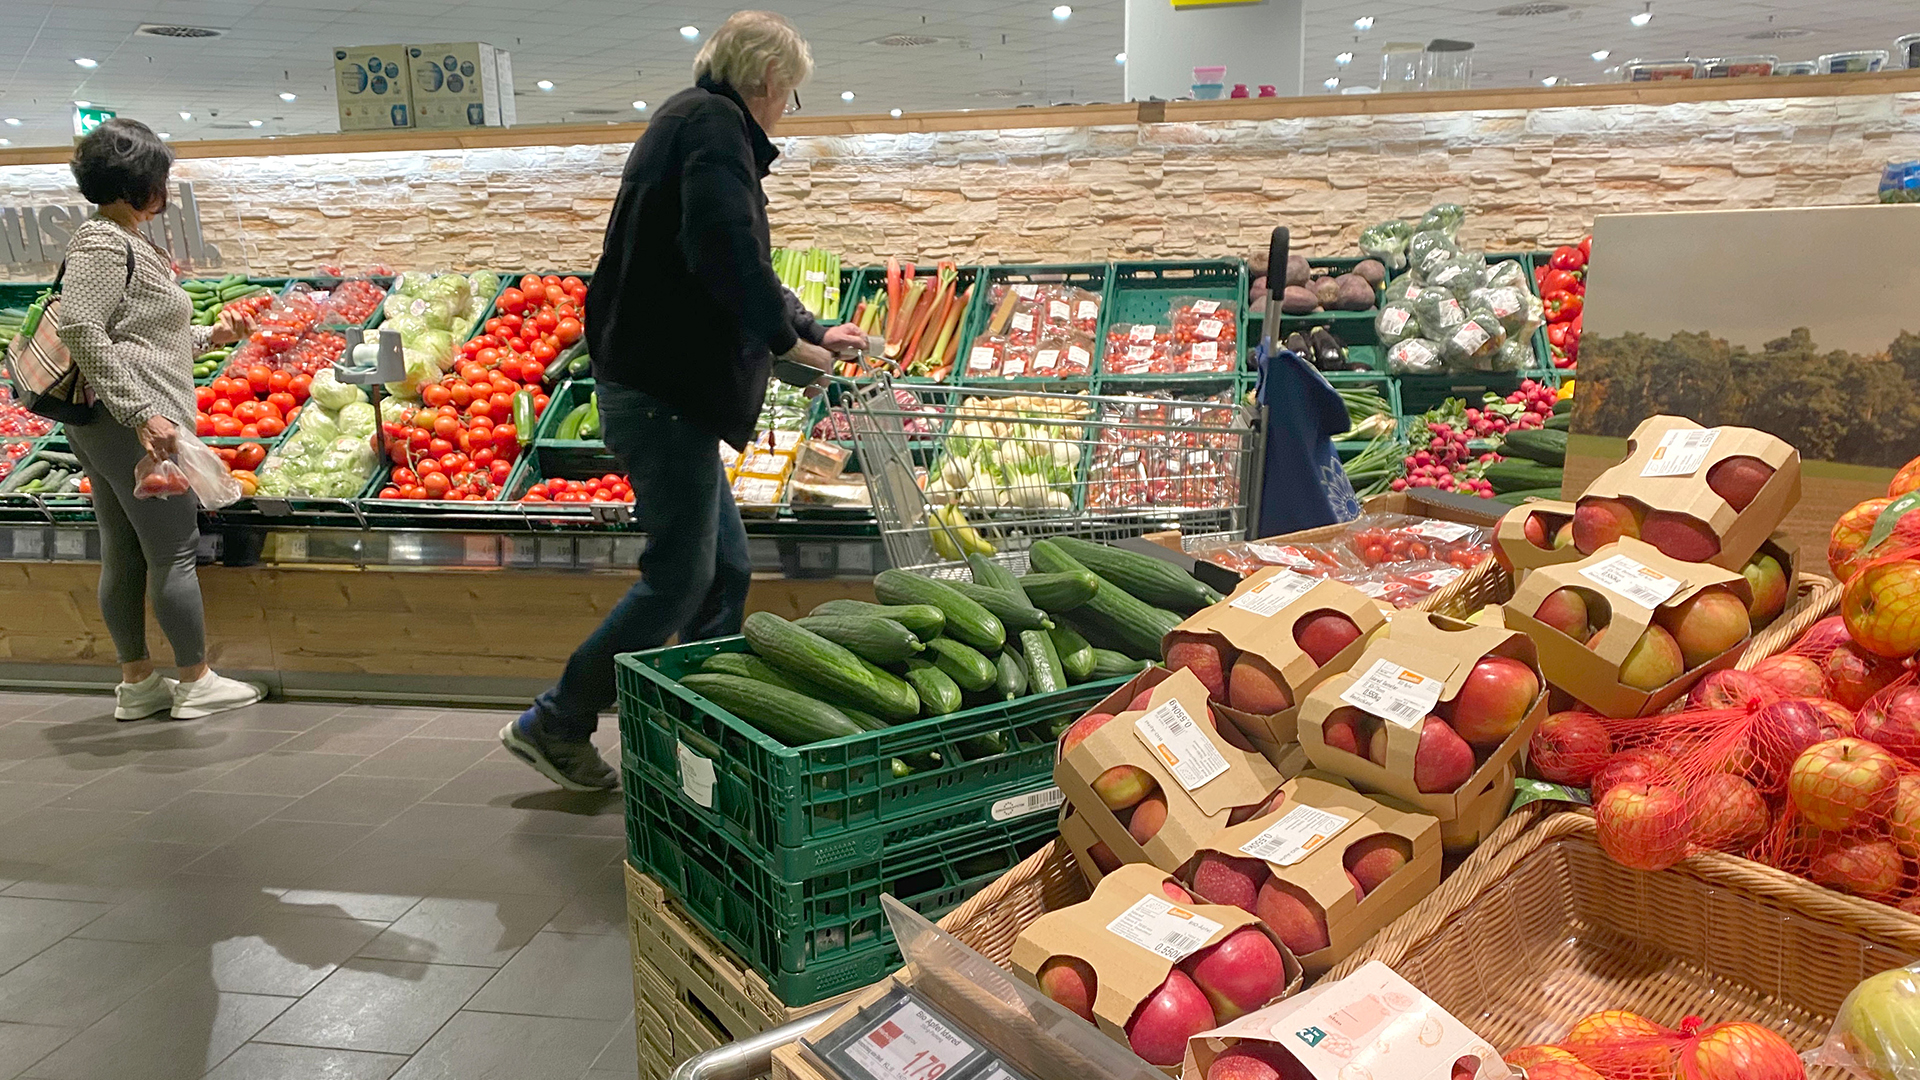 Kunden in der Obst- und Gemüseabteilung eines Supermarktes. | picture alliance / SvenSimon